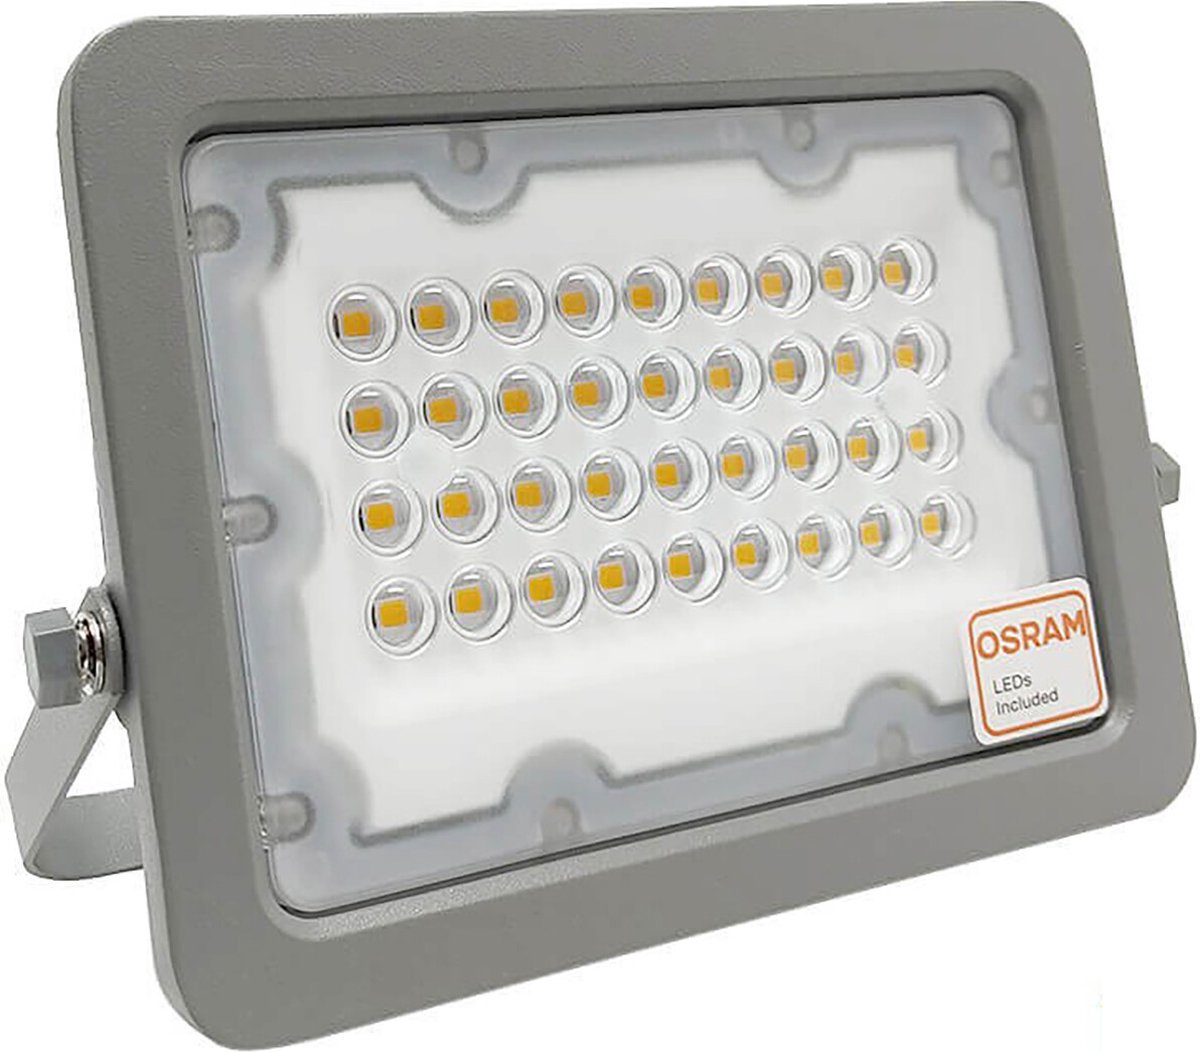 LED Bouwlamp - 30 Watt - LED Schijnwerper - Helder/Koud Wit 6000K - Waterdicht IP65 - 120LM/W - Flikkervrij - OSRAM LEDs